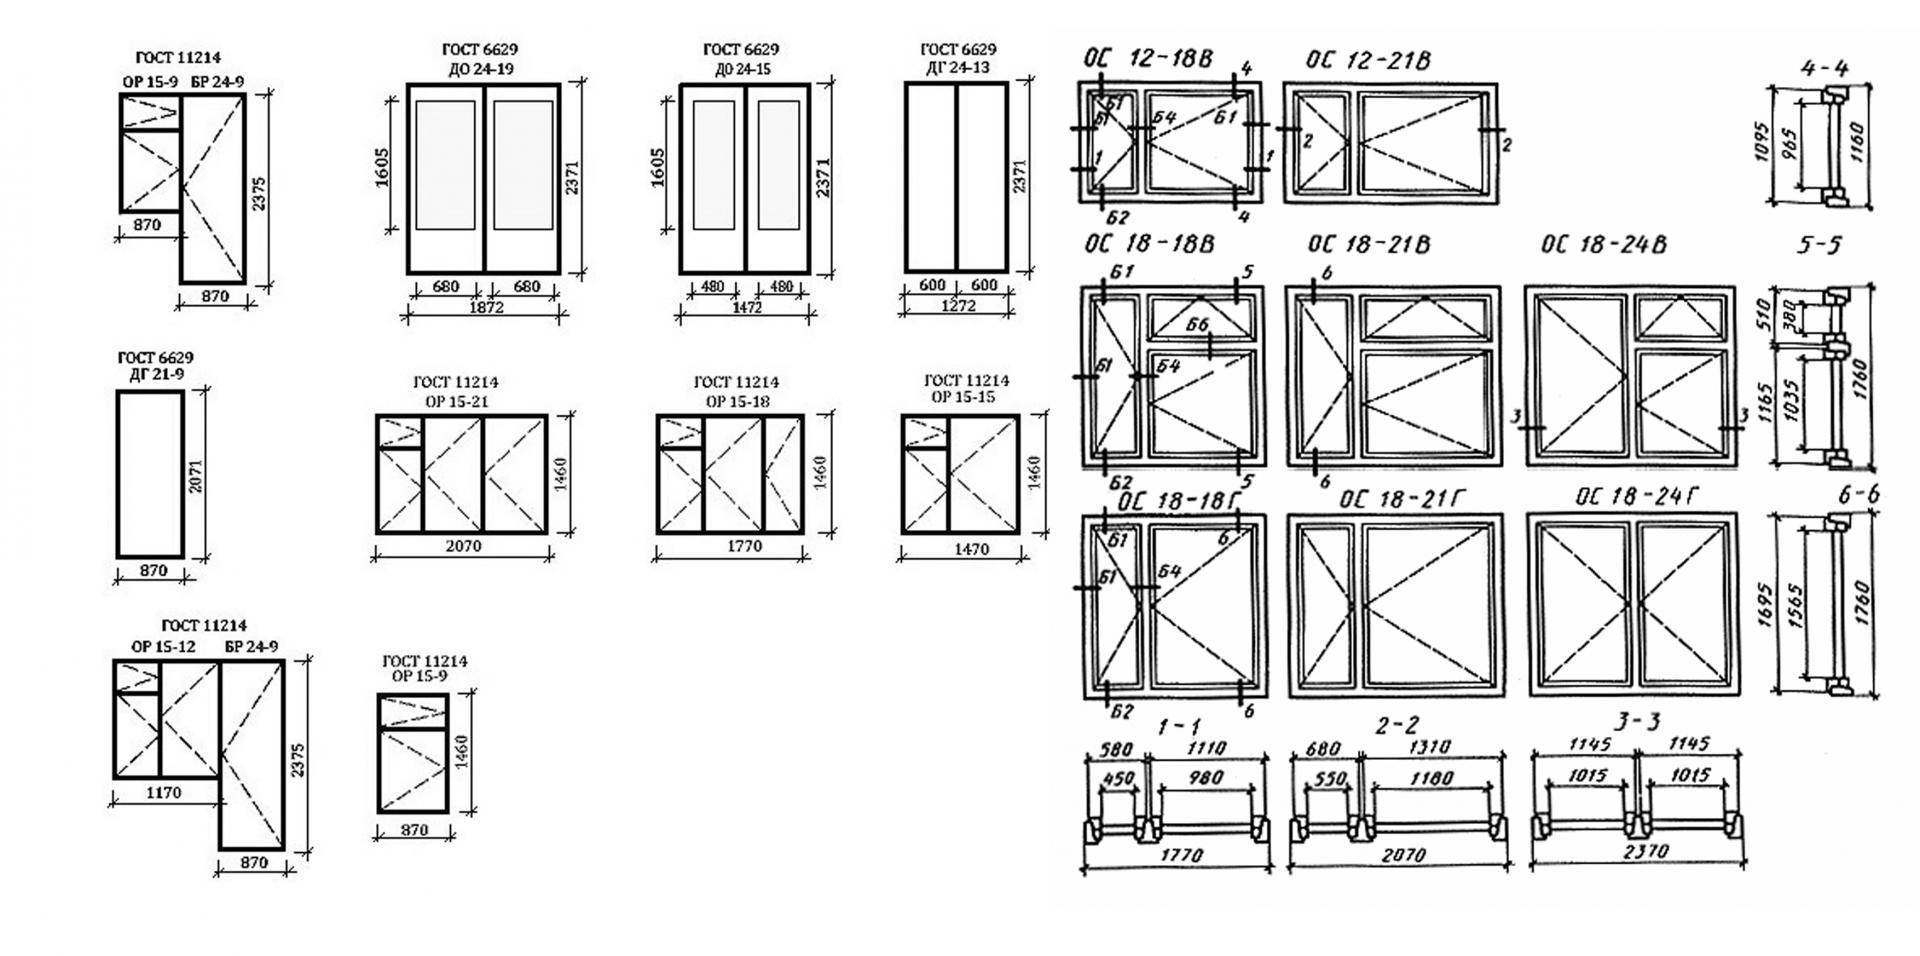 Каковы размеры стандартного и нестандартного окна в кирпичном доме?